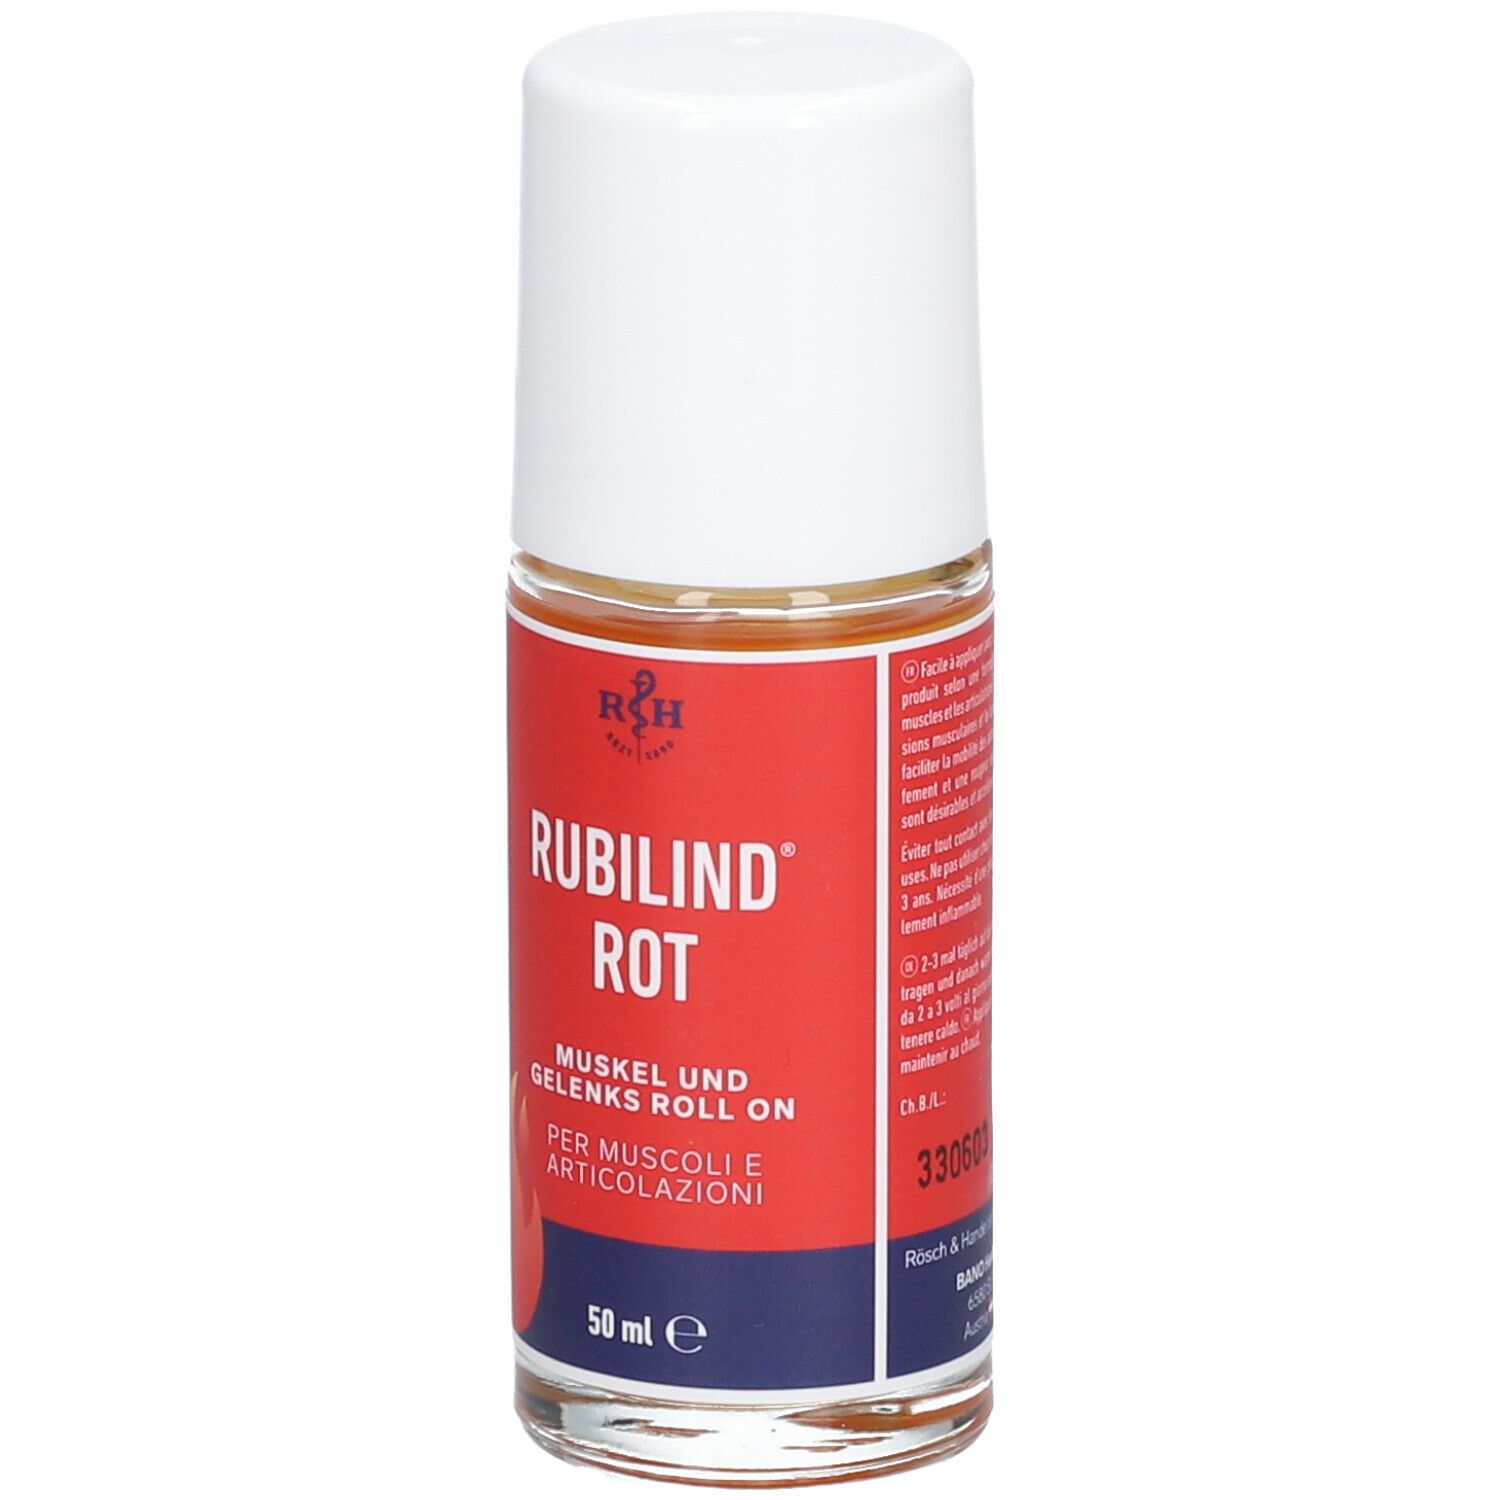 RUBILIND® Rot Muskel- und Gelenks Roll-on